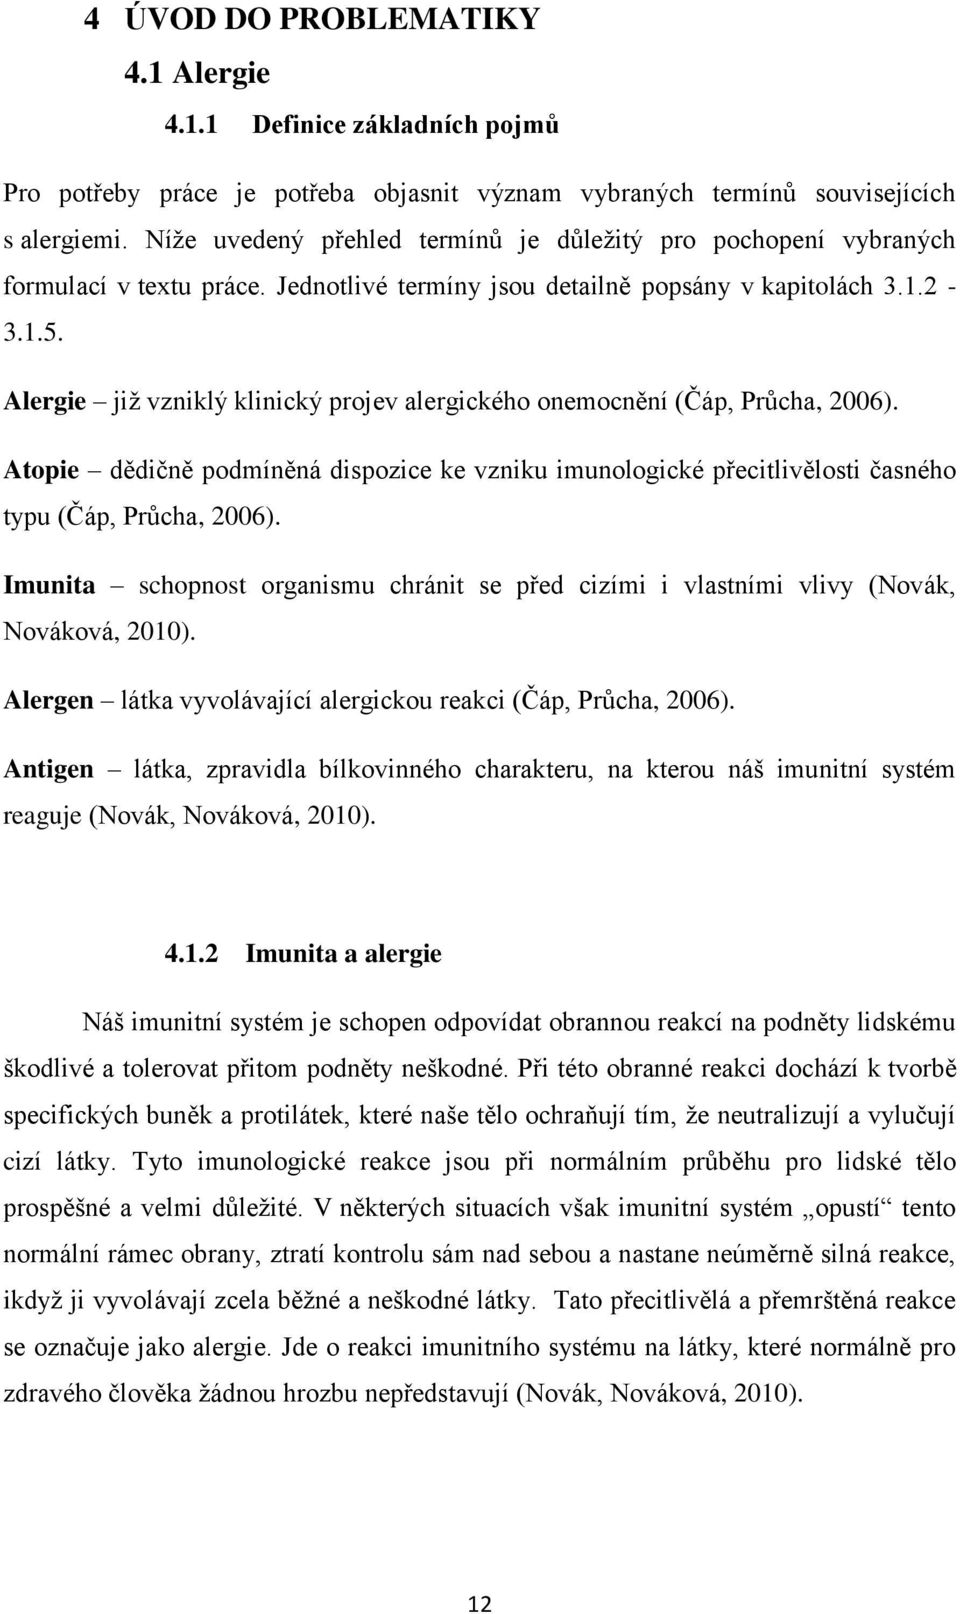 Alergie již vzniklý klinický projev alergického onemocnění (Čáp, Průcha, 2006). Atopie dědičně podmíněná dispozice ke vzniku imunologické přecitlivělosti časného typu (Čáp, Průcha, 2006).